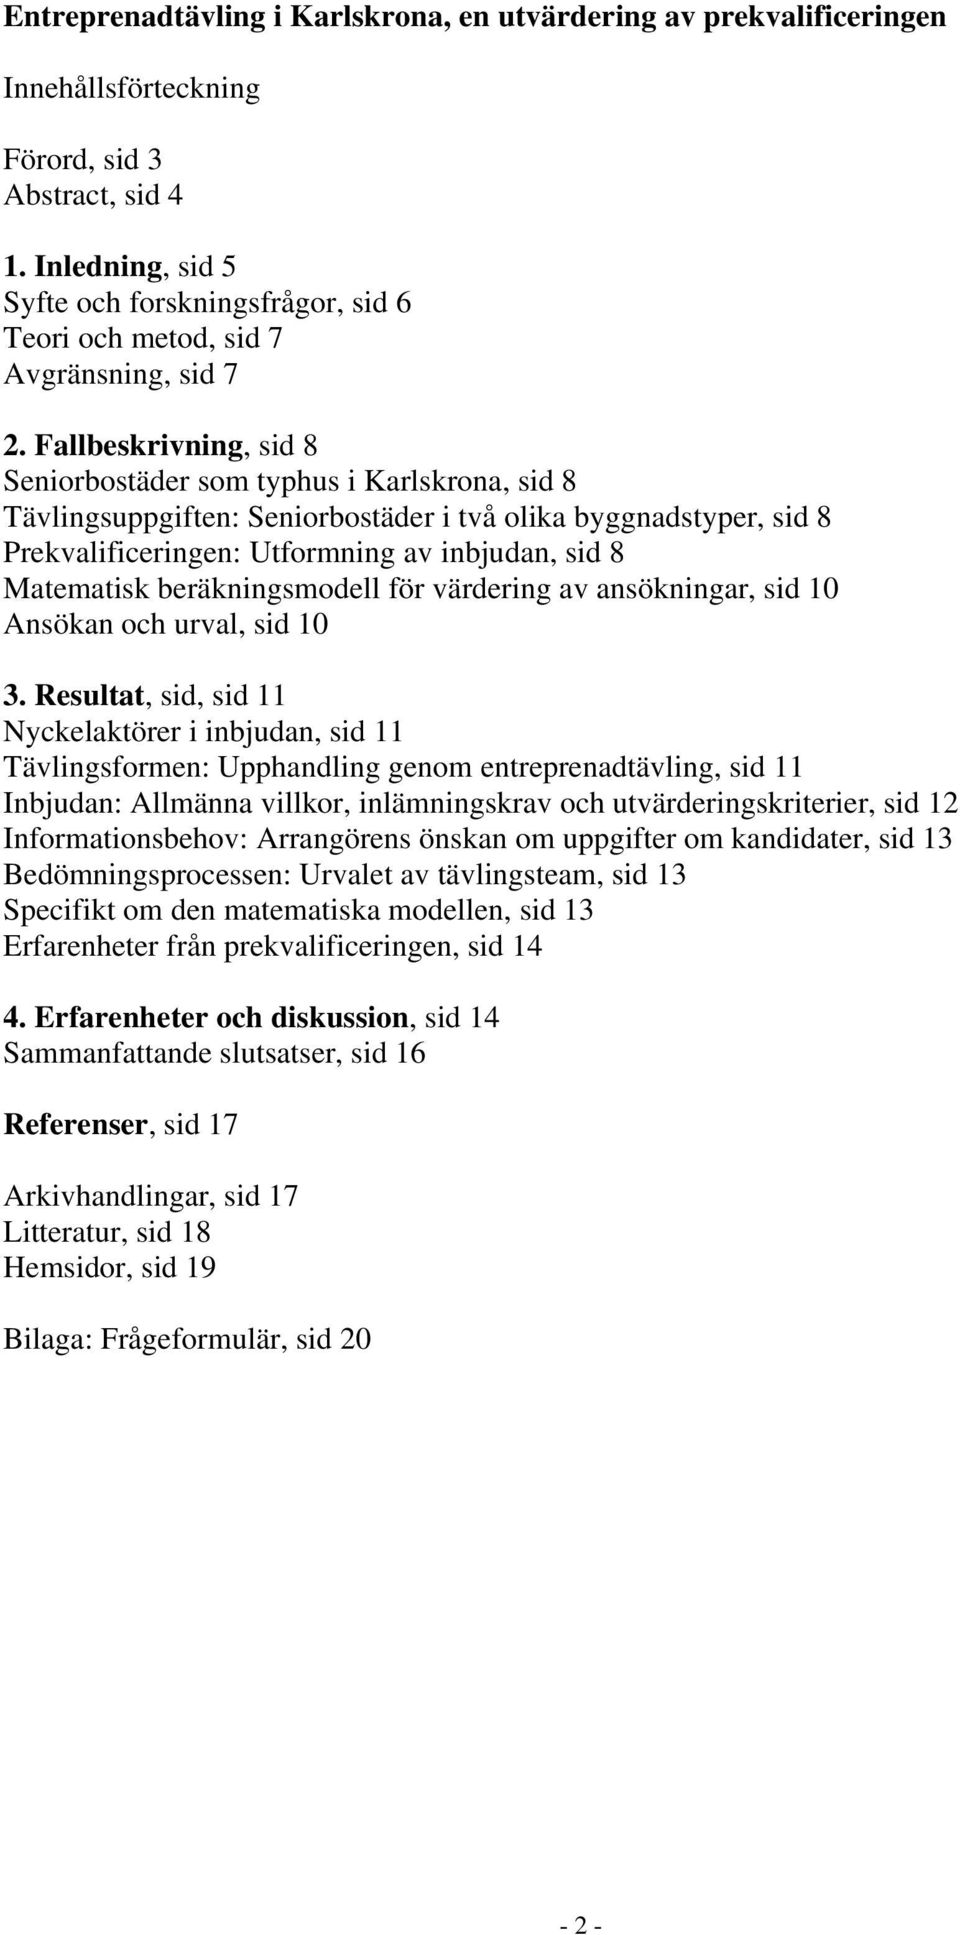 Fallbeskrivning, sid 8 Seniorbostäder som typhus i Karlskrona, sid 8 Tävlingsuppgiften: Seniorbostäder i två olika byggnadstyper, sid 8 Prekvalificeringen: Utformning av inbjudan, sid 8 Matematisk